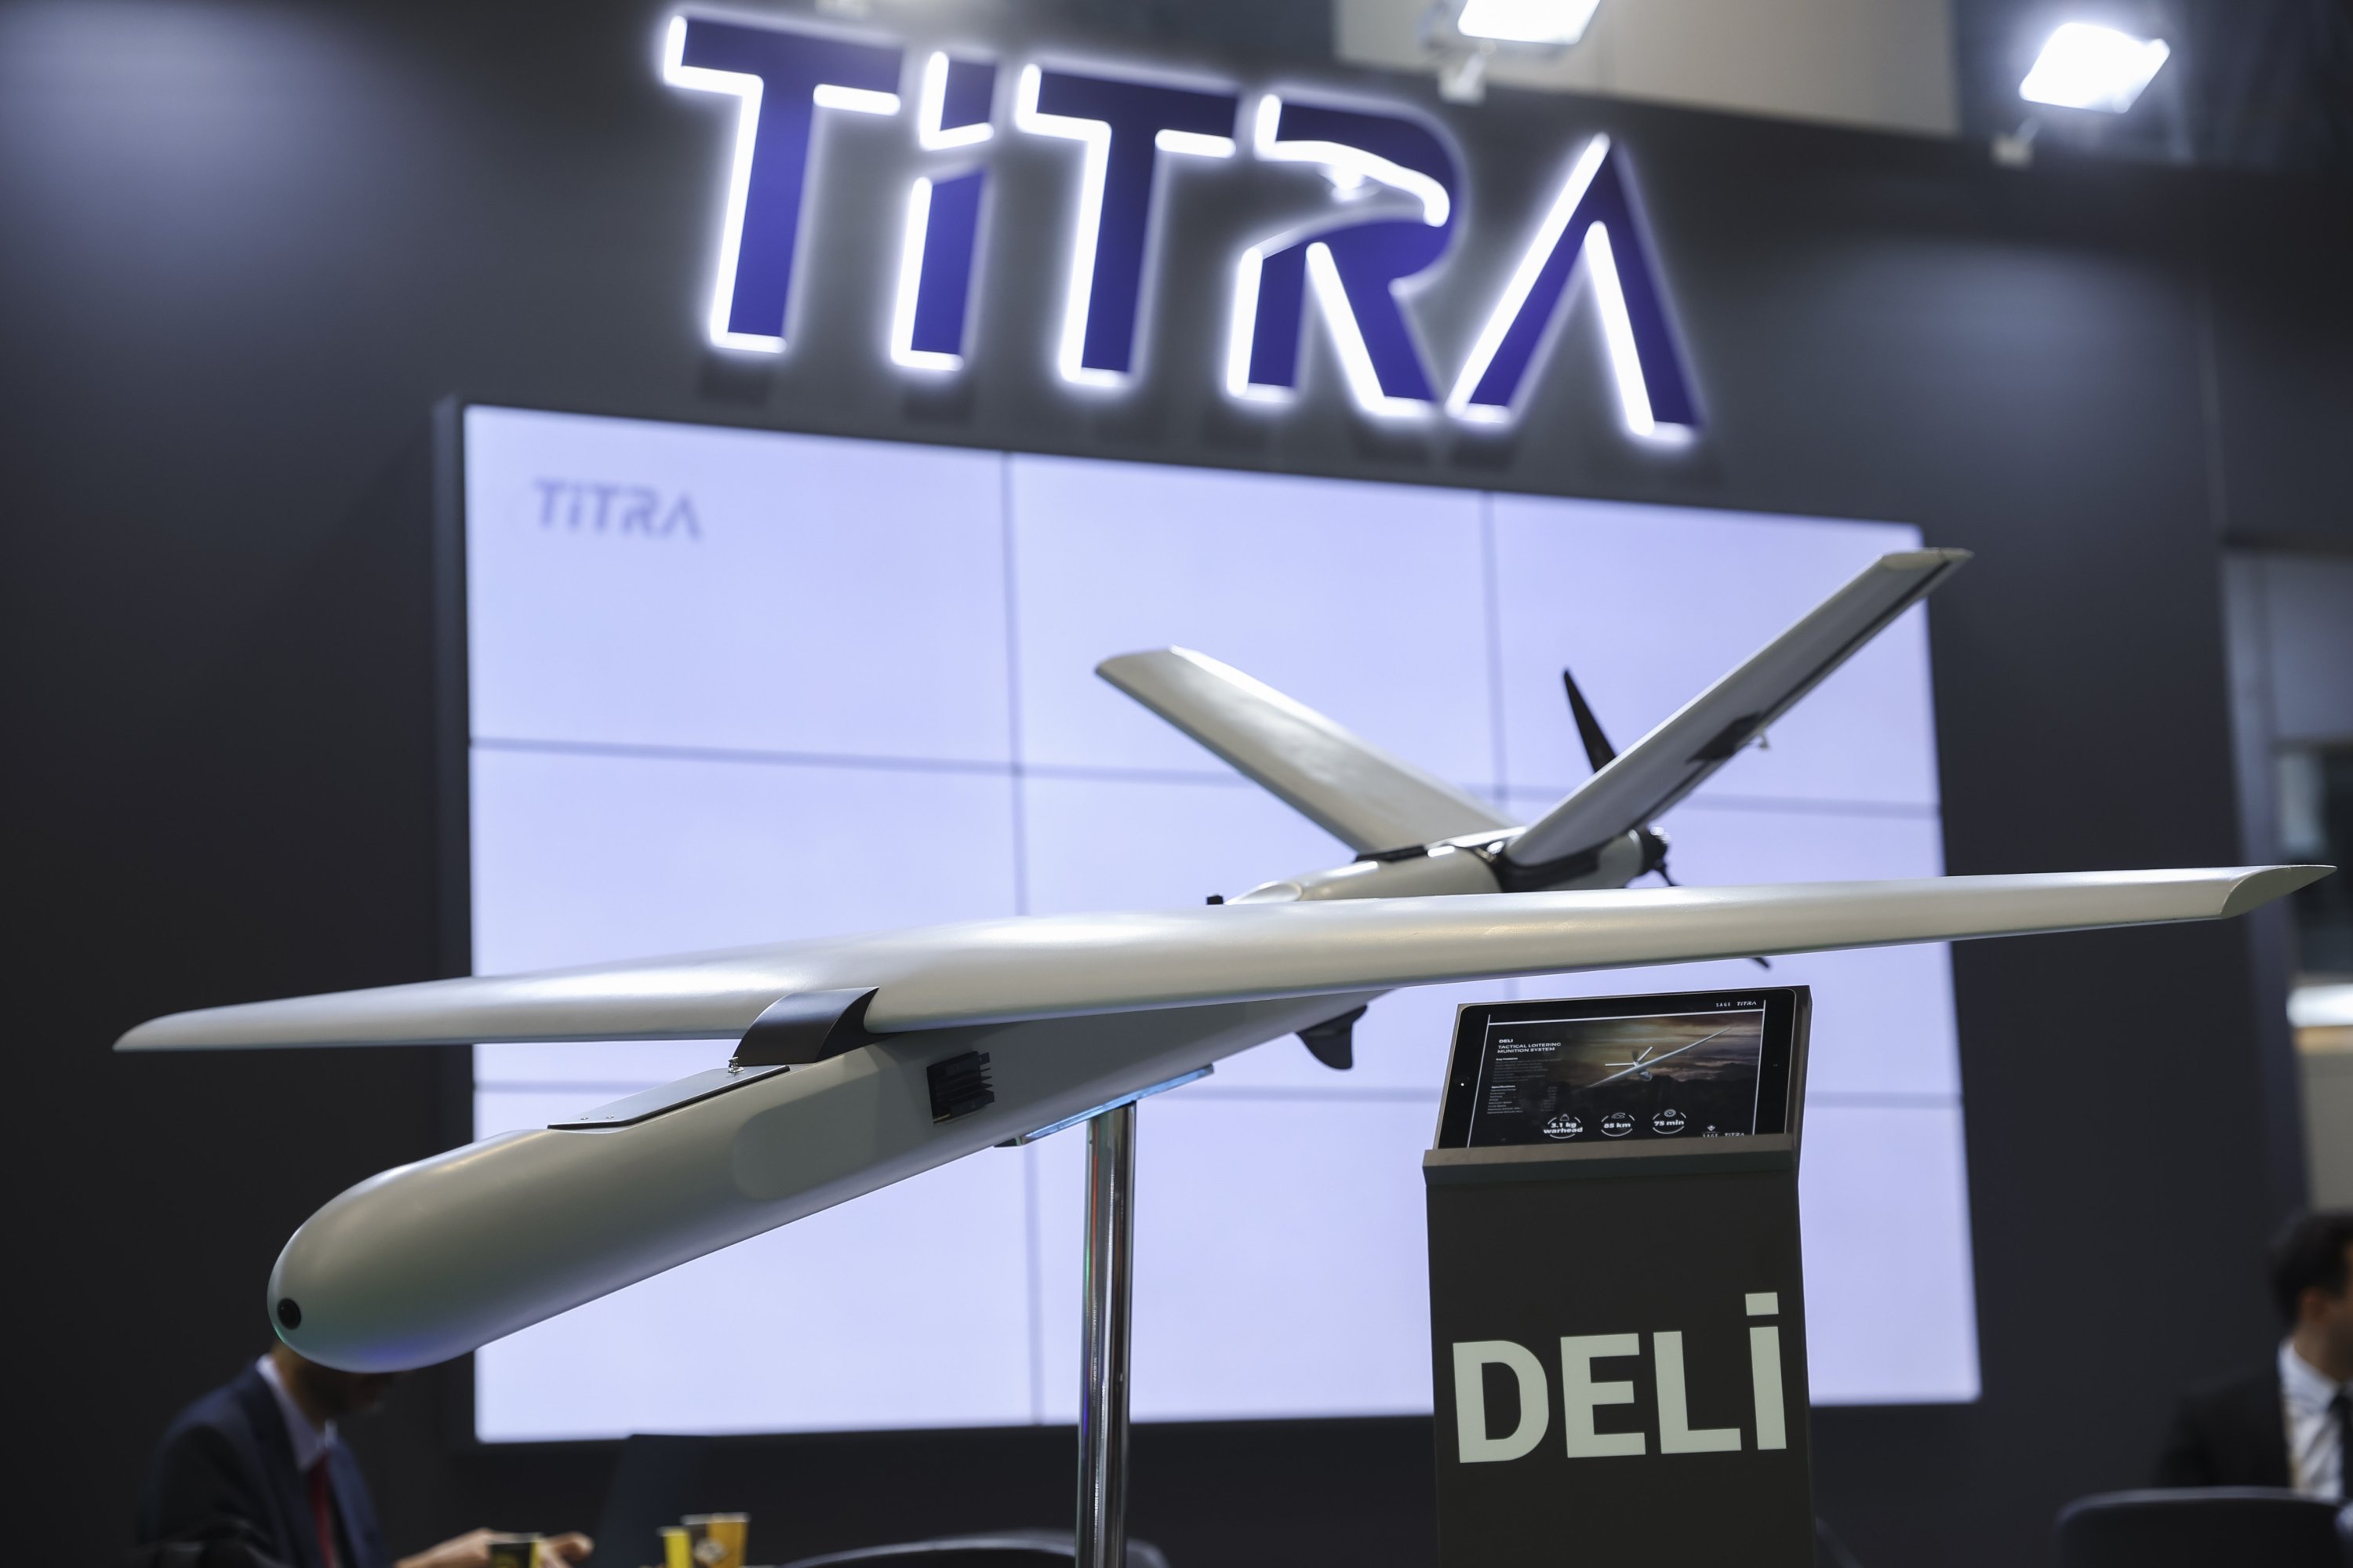 Titra odsłania drona Deli kamikaze o prędkości 180km/h i ładowności 3,1kg